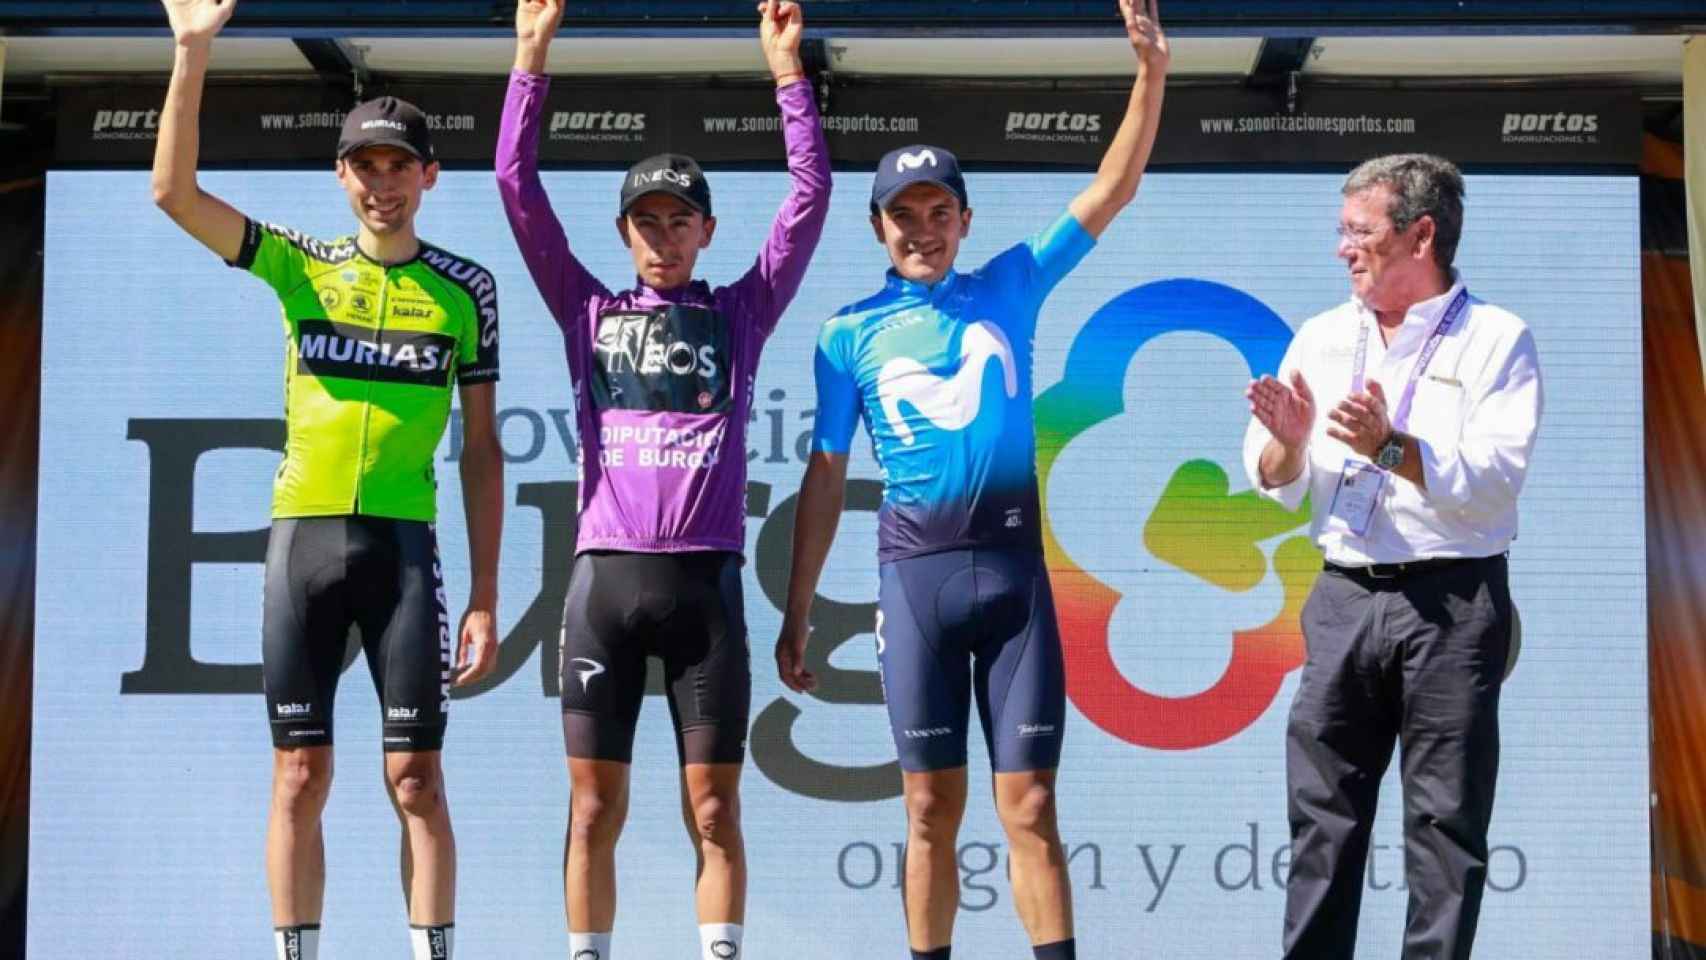 El podio de la edición de la Vuelta a Burgos 2019 con Óscar Rodríguez (izquierda), Iván Ramiro Sosa (centro) y Richard Carapaz (derecha)